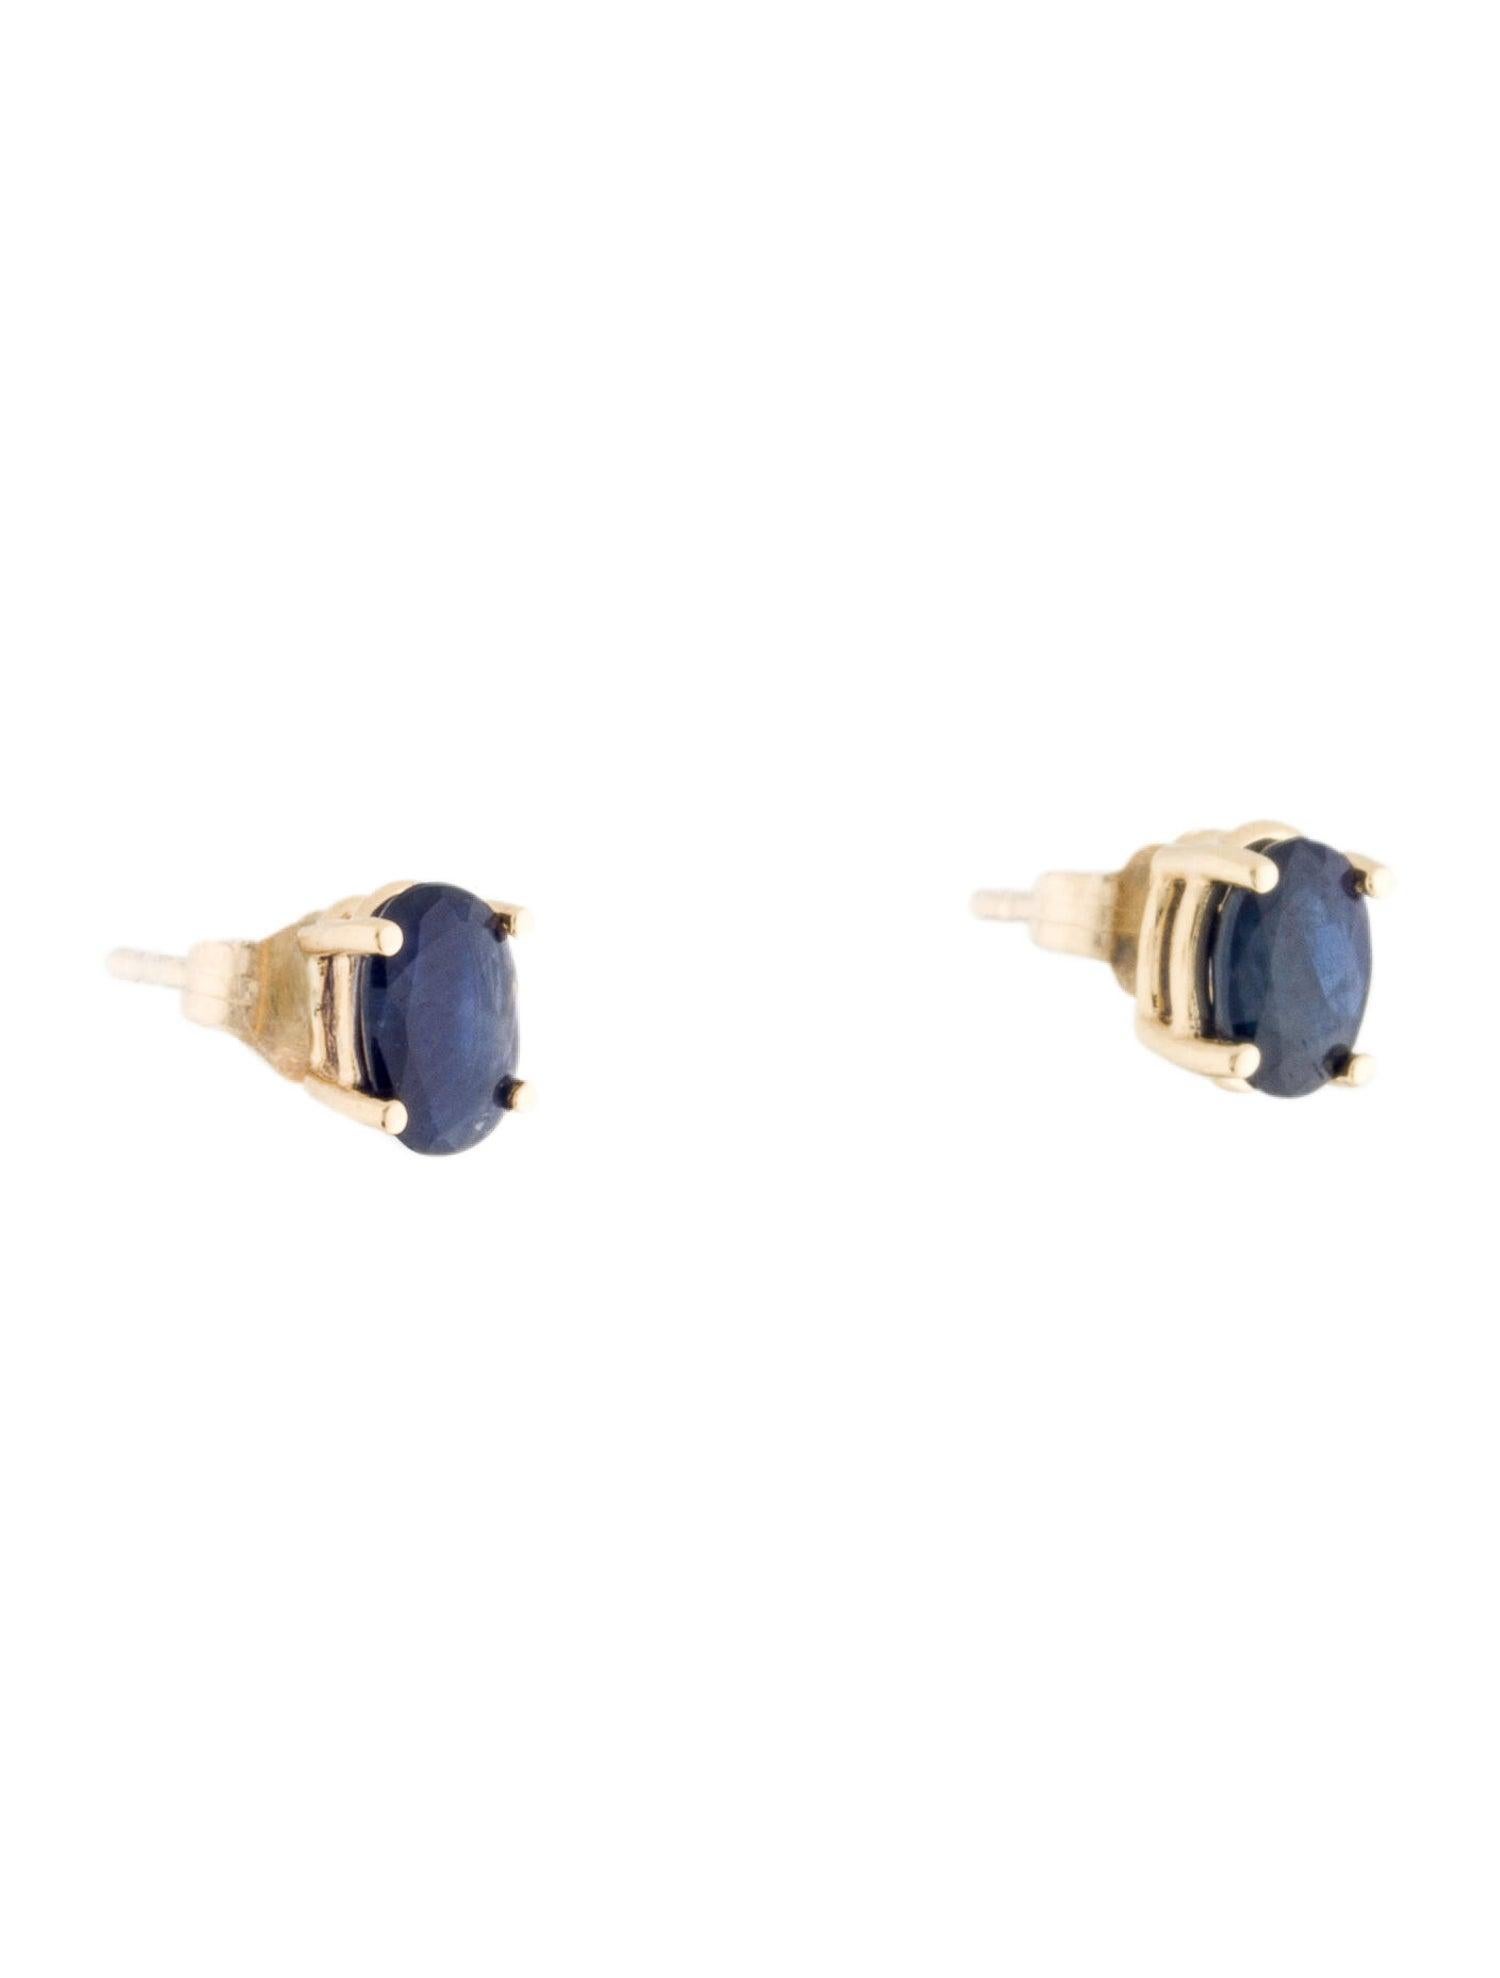 Oval Cut 14 Karat Yellow Gold 1.30 Carat Sapphire Oval Shape Stud Earrings For Sale